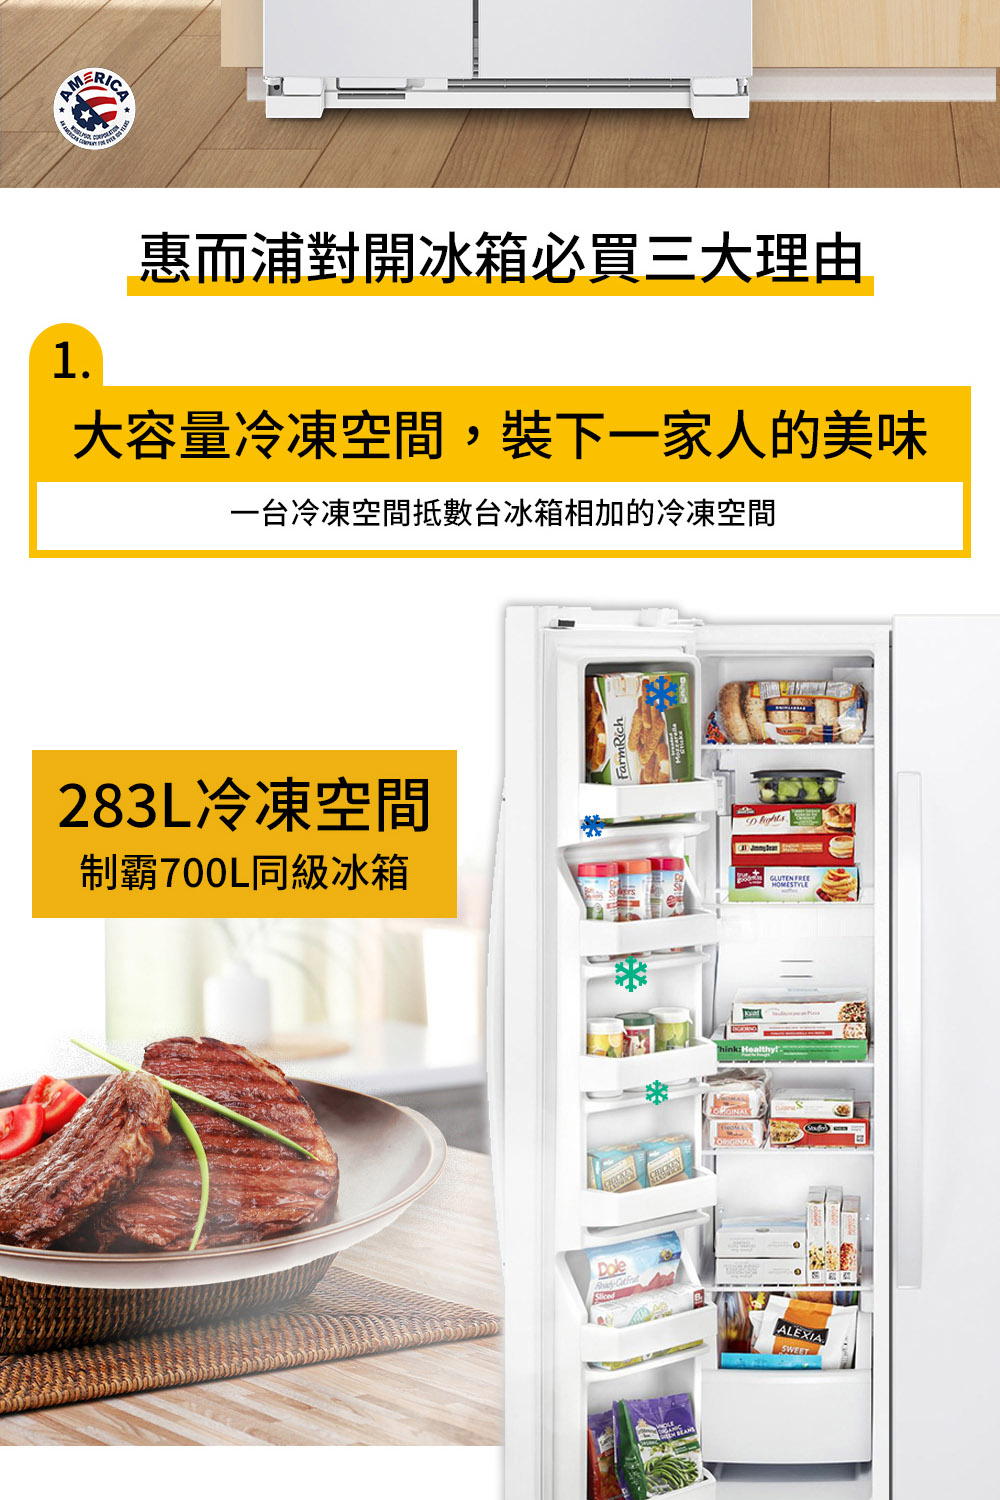 惠而浦對開冰箱必買三大理由 大容量冷凍空間,裝下一家人的美味 一台冷凍空間抵數台冰箱相加的冷凍空間 283L冷凍空間 制霸700L同級冰箱 